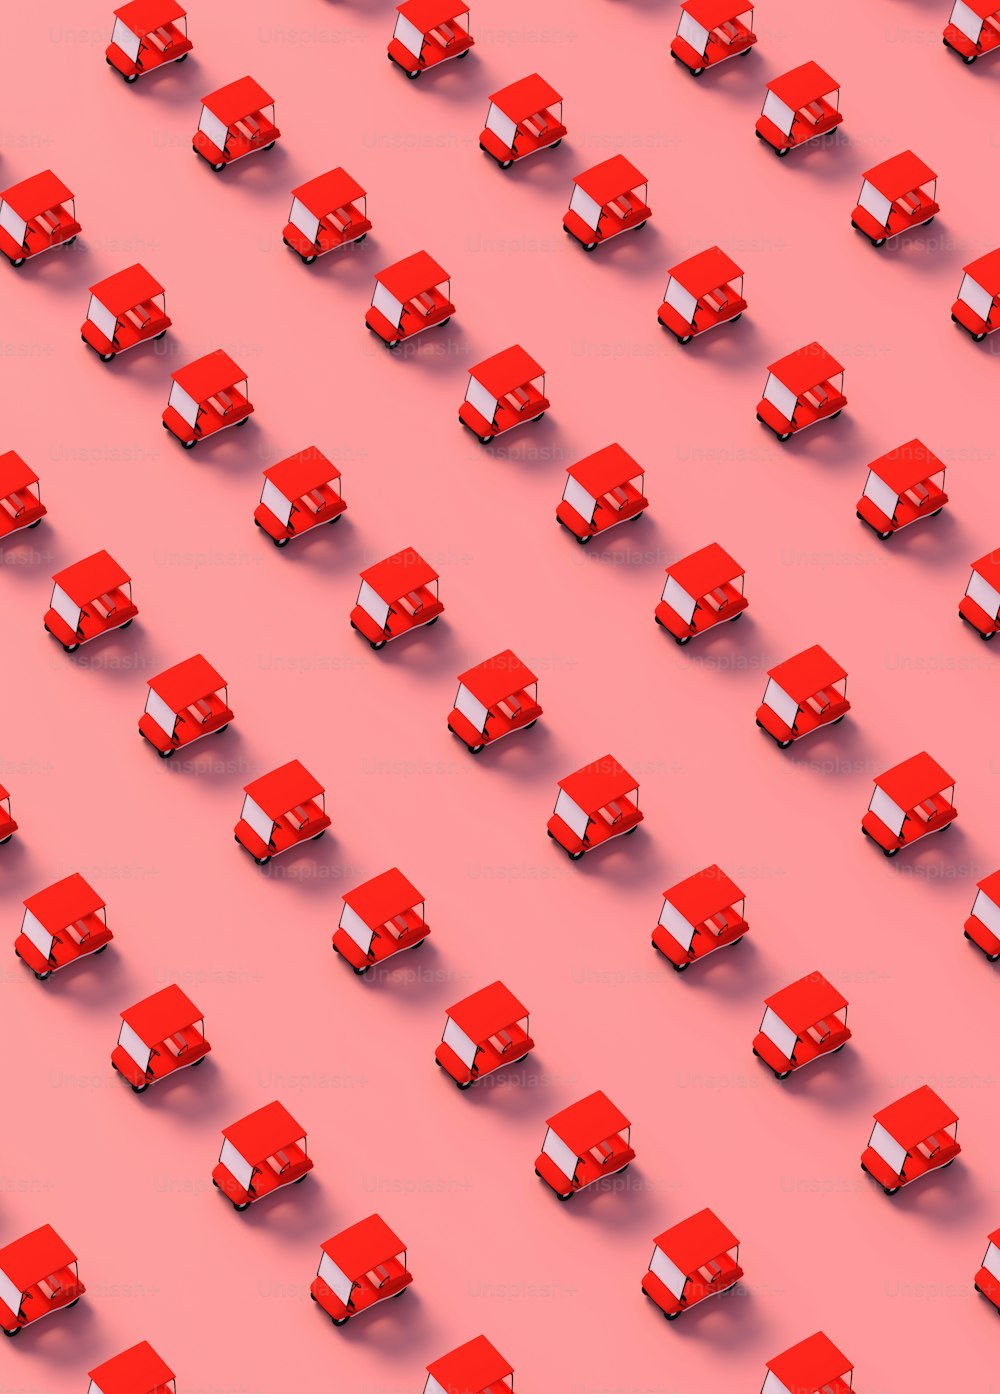 eine große Gruppe roter Würfel auf rosa Hintergrund